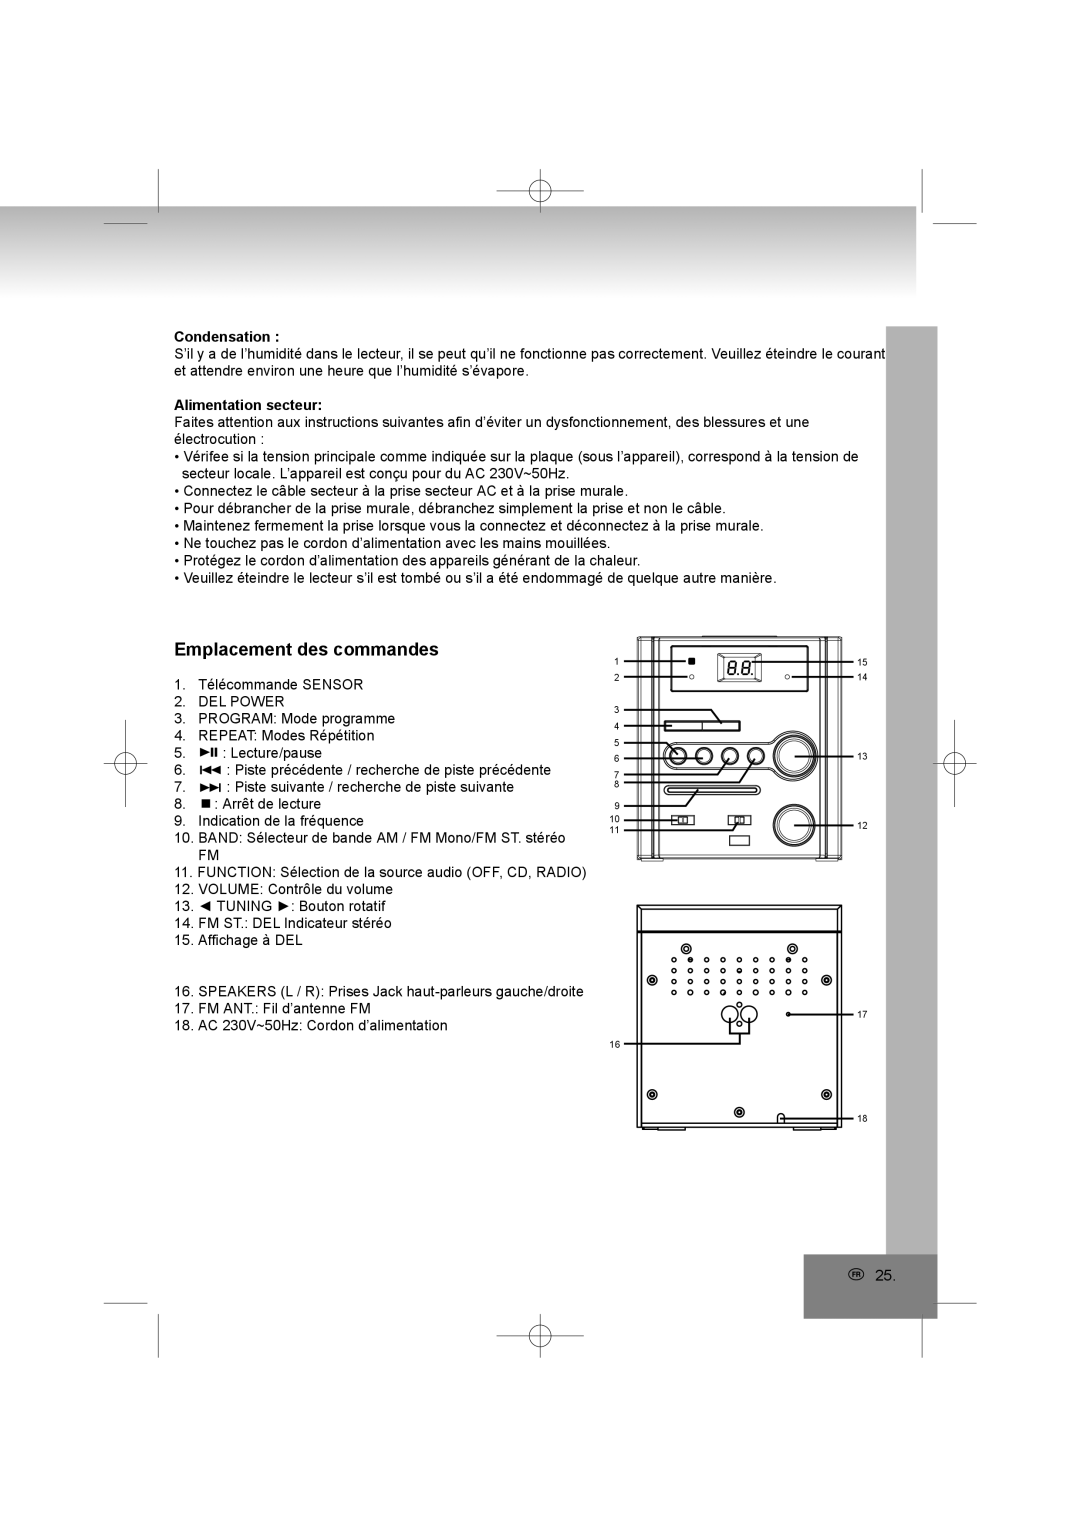 Elta 2402N manual Emplacement des commandes, Alimentation secteur, Condensation 